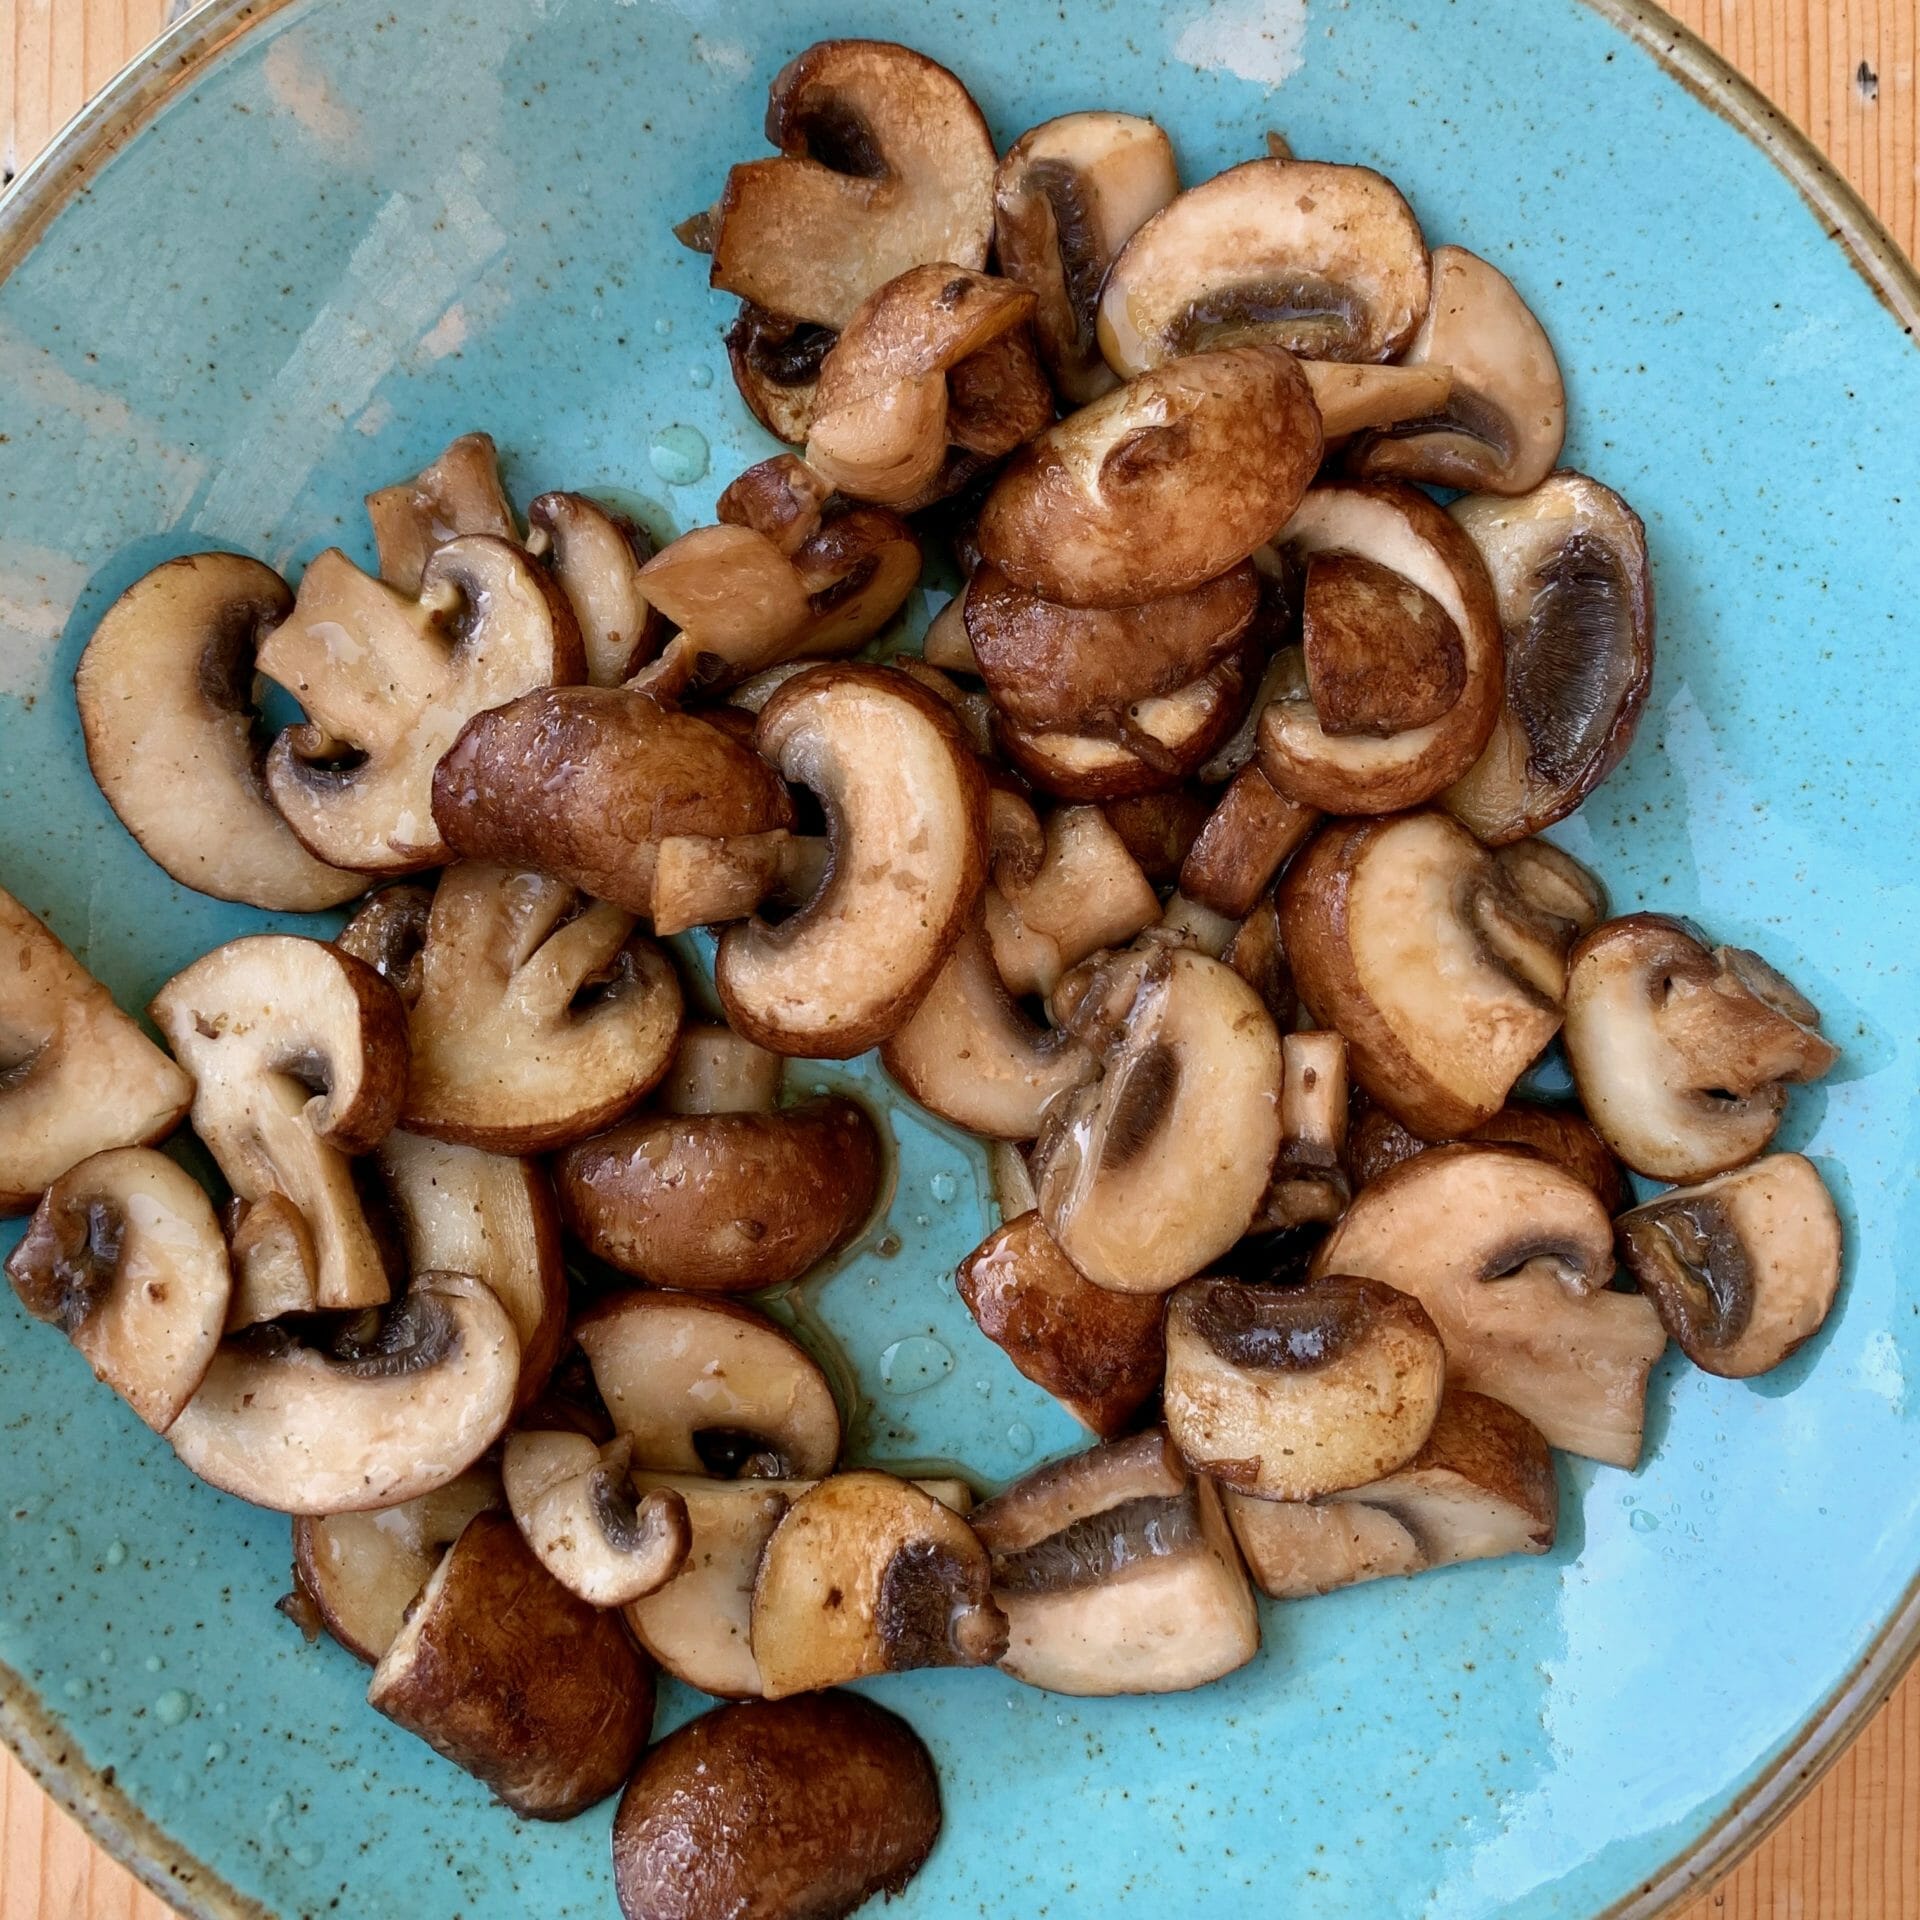 Sautéed mushrooms